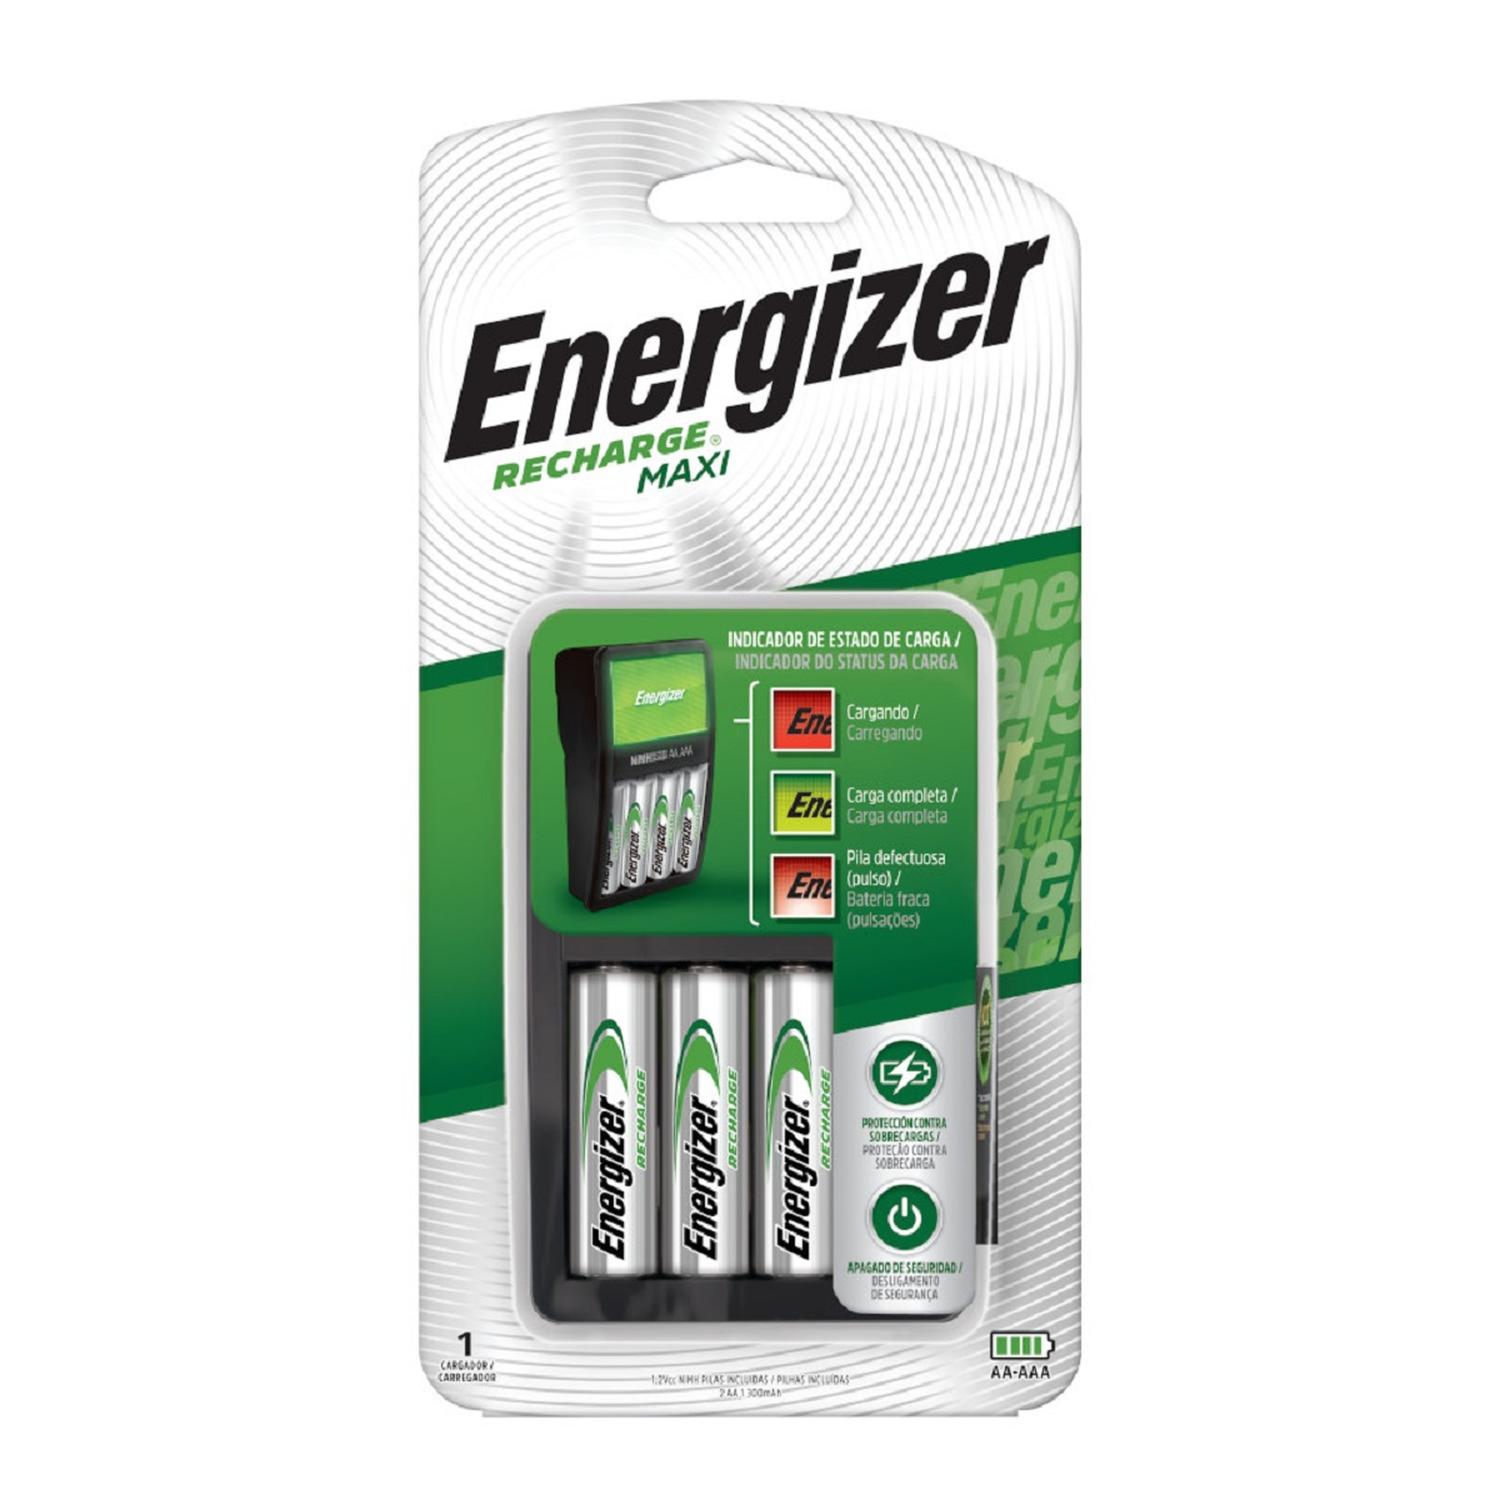 Cargador de Pilas MAXI Energizer + 2 Pilas AAA Energizer